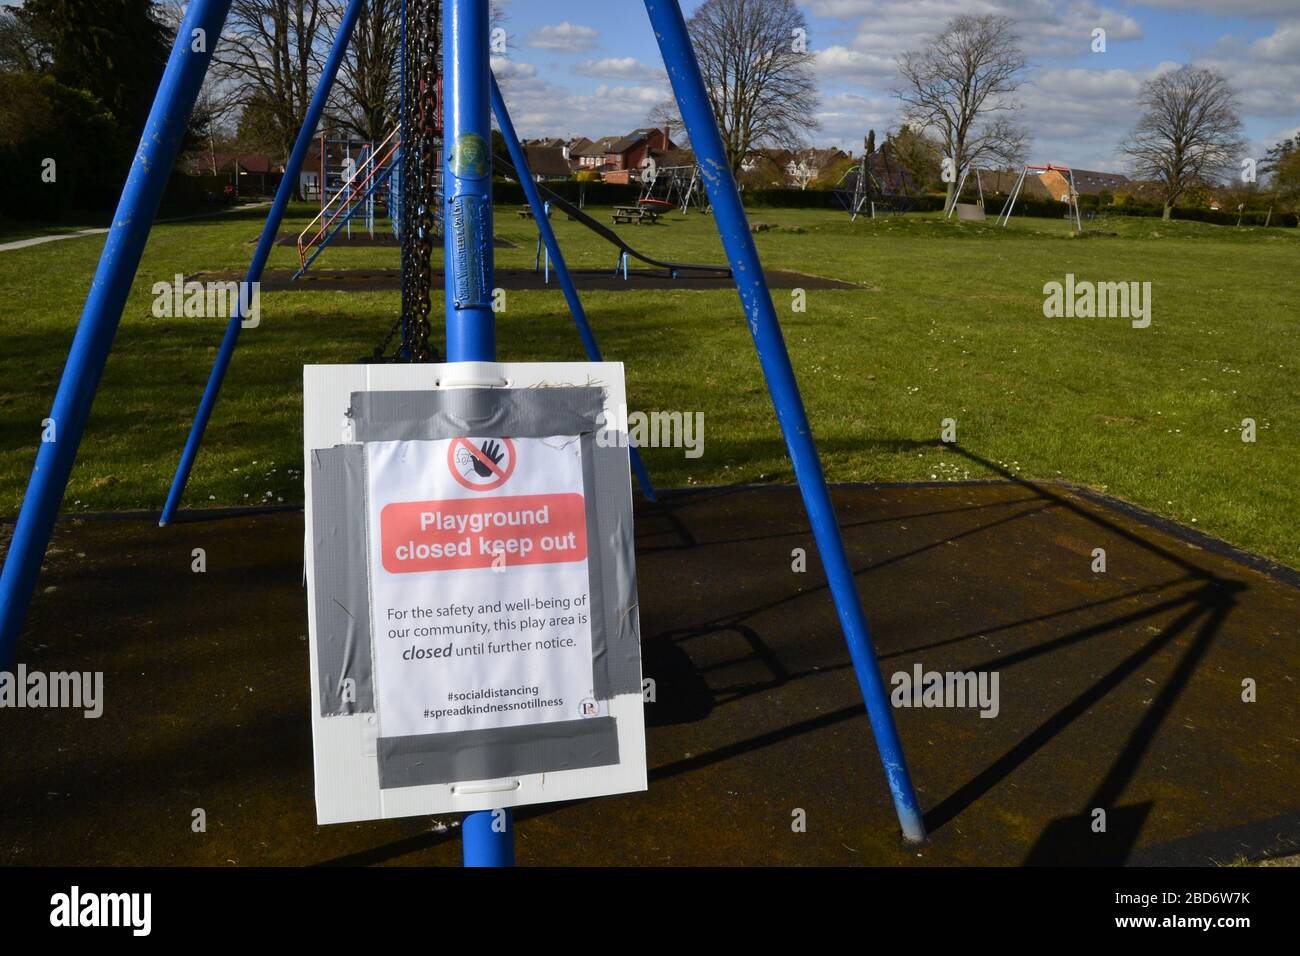 Der Spielplatz in Princes Risborough ist wegen Coronavirus Sperrens geschlossen. Buckinghamshire, Großbritannien. Schild lautet: Spielplatz geschlossen. Eintritt nicht möglich. Stockfoto